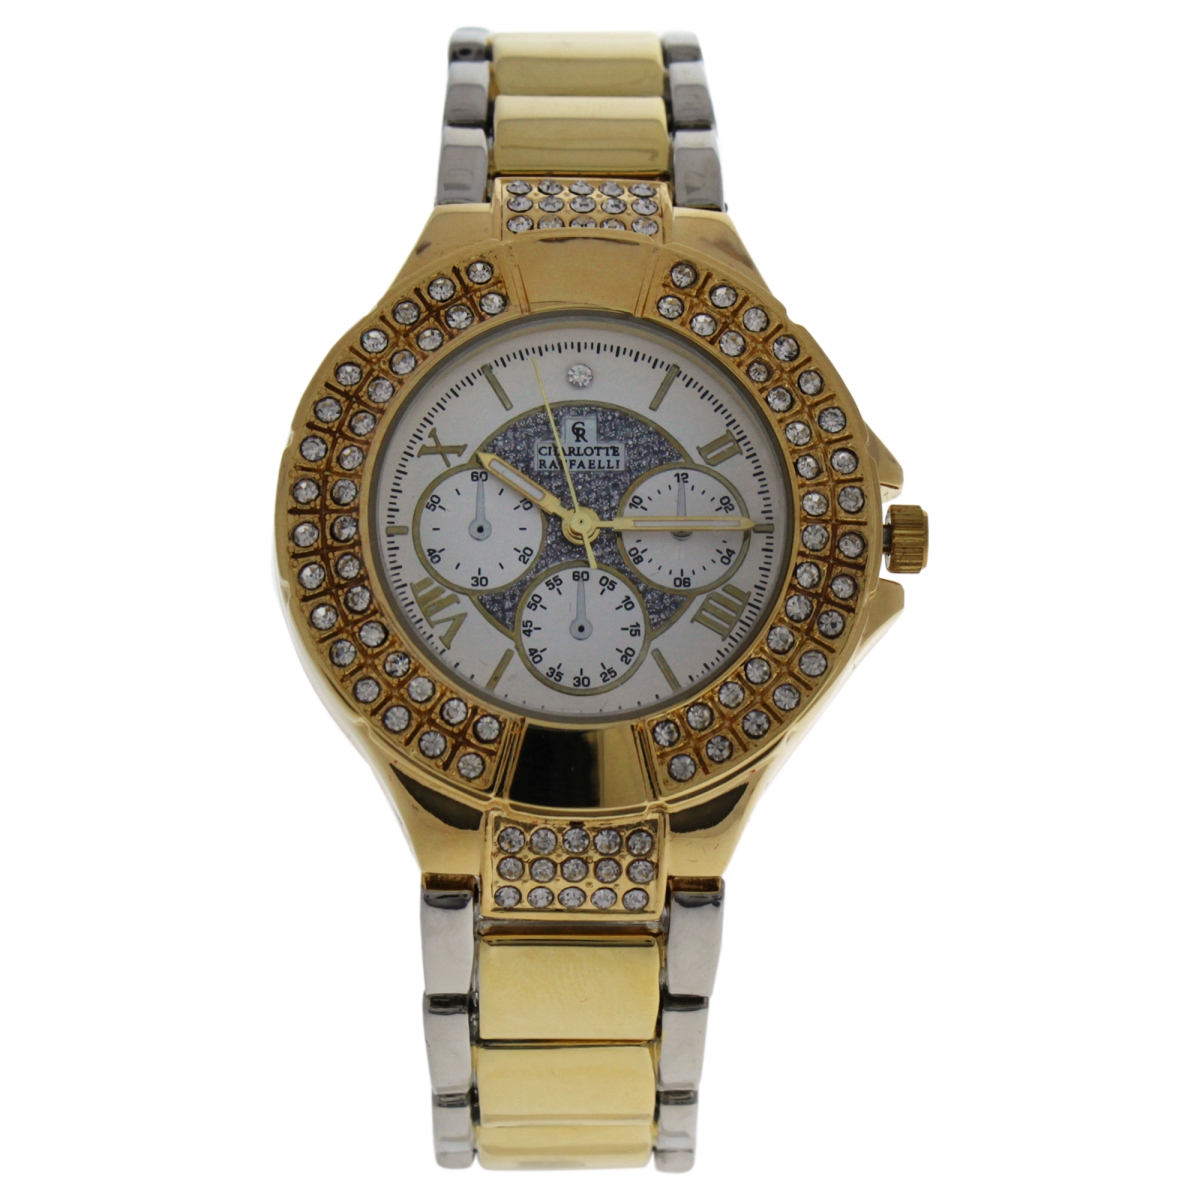 W-wat-1445 Gold & Silver Gold Stainless Steel Bracelet Watch For Women - Crm003